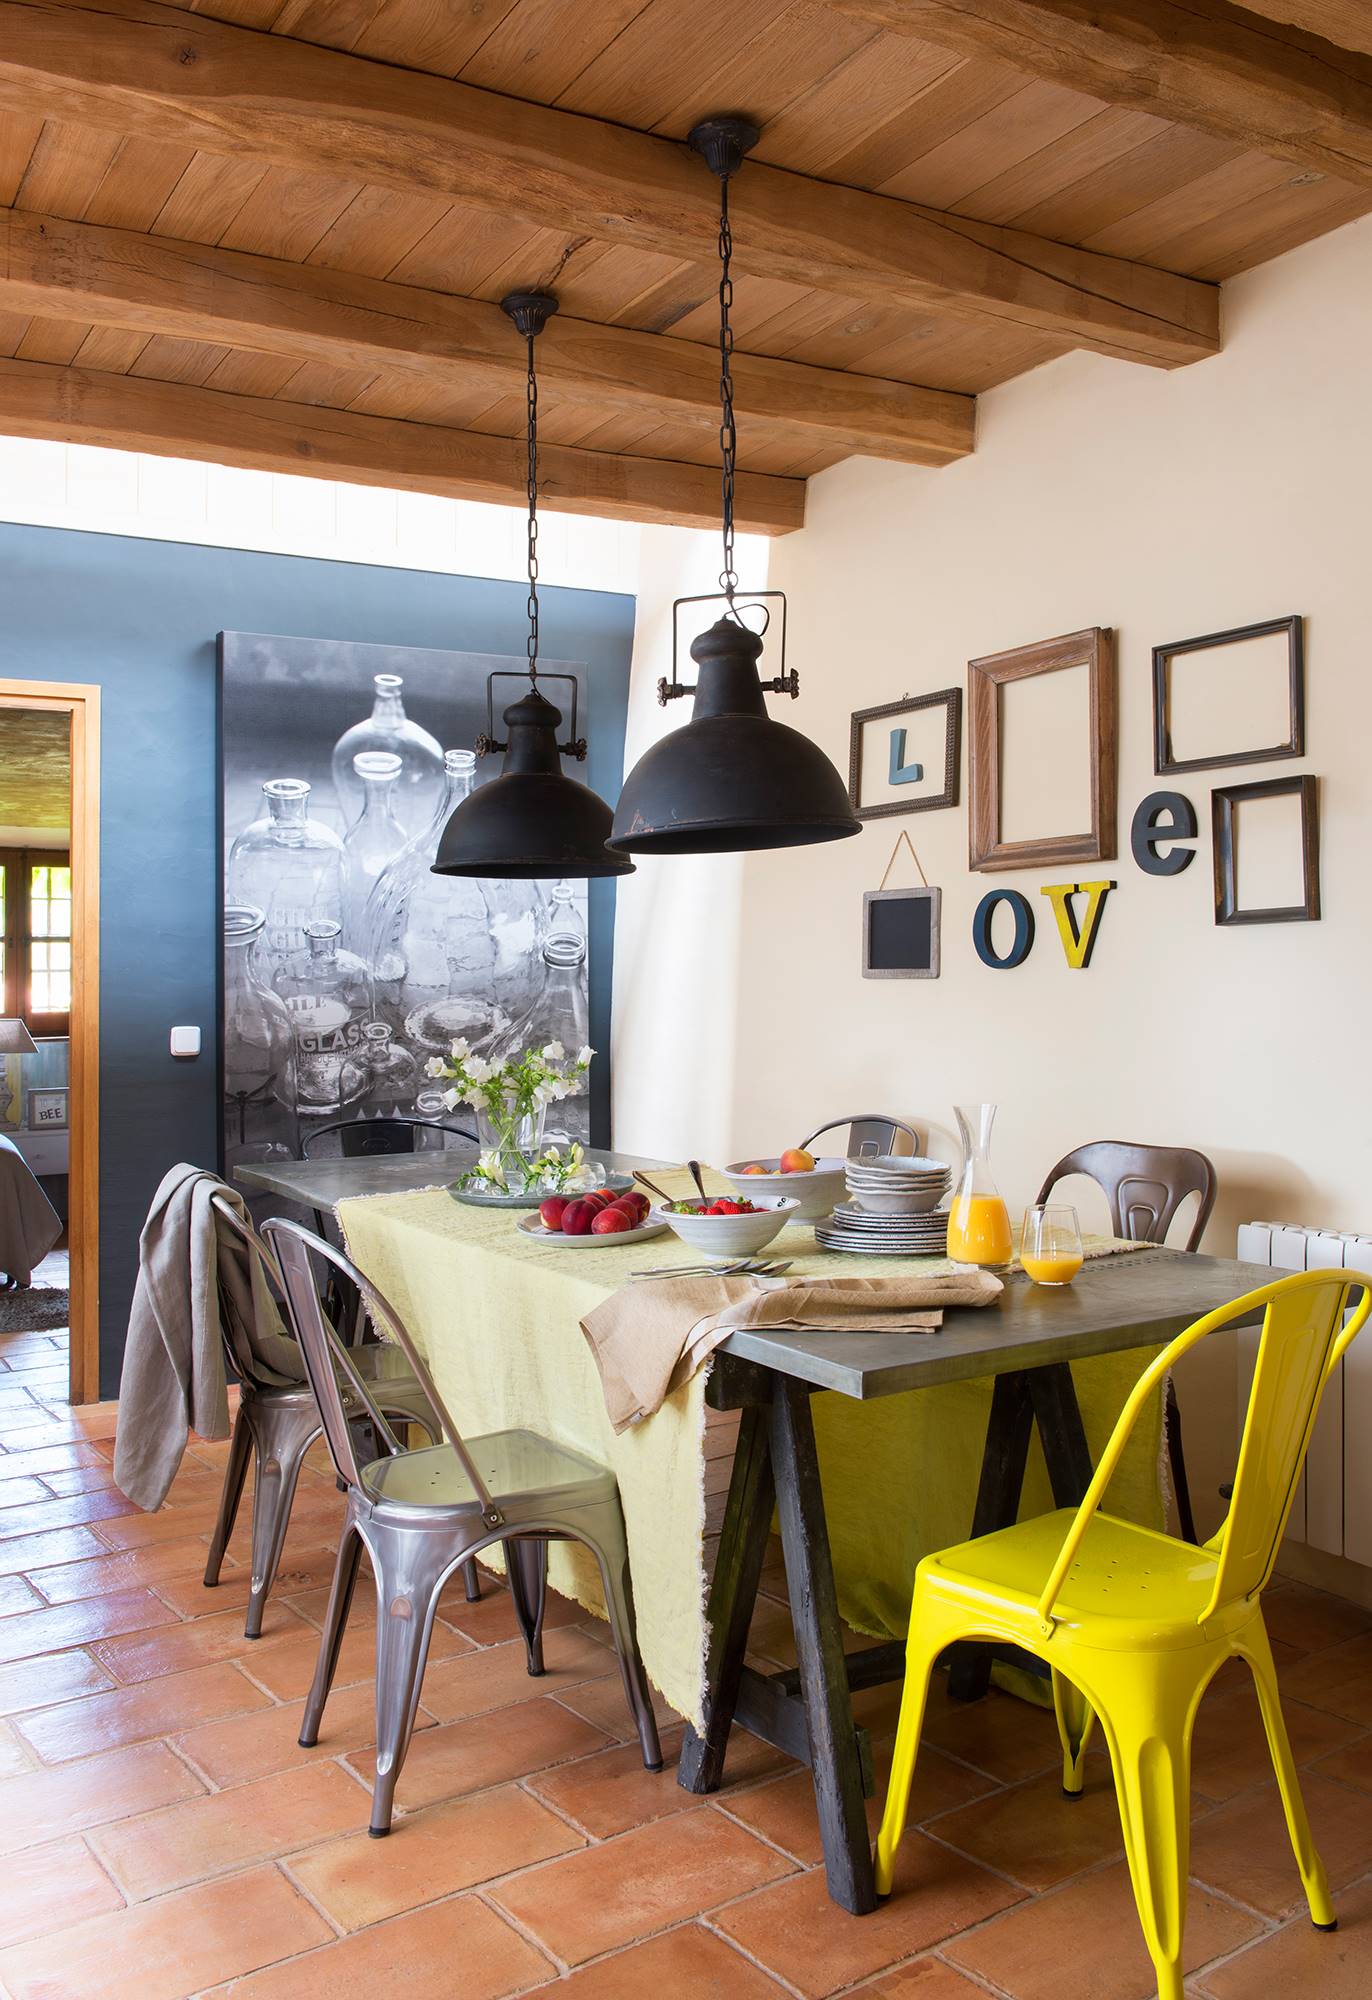 Comedor con muebles de aire industrial con pared decorada con letras.